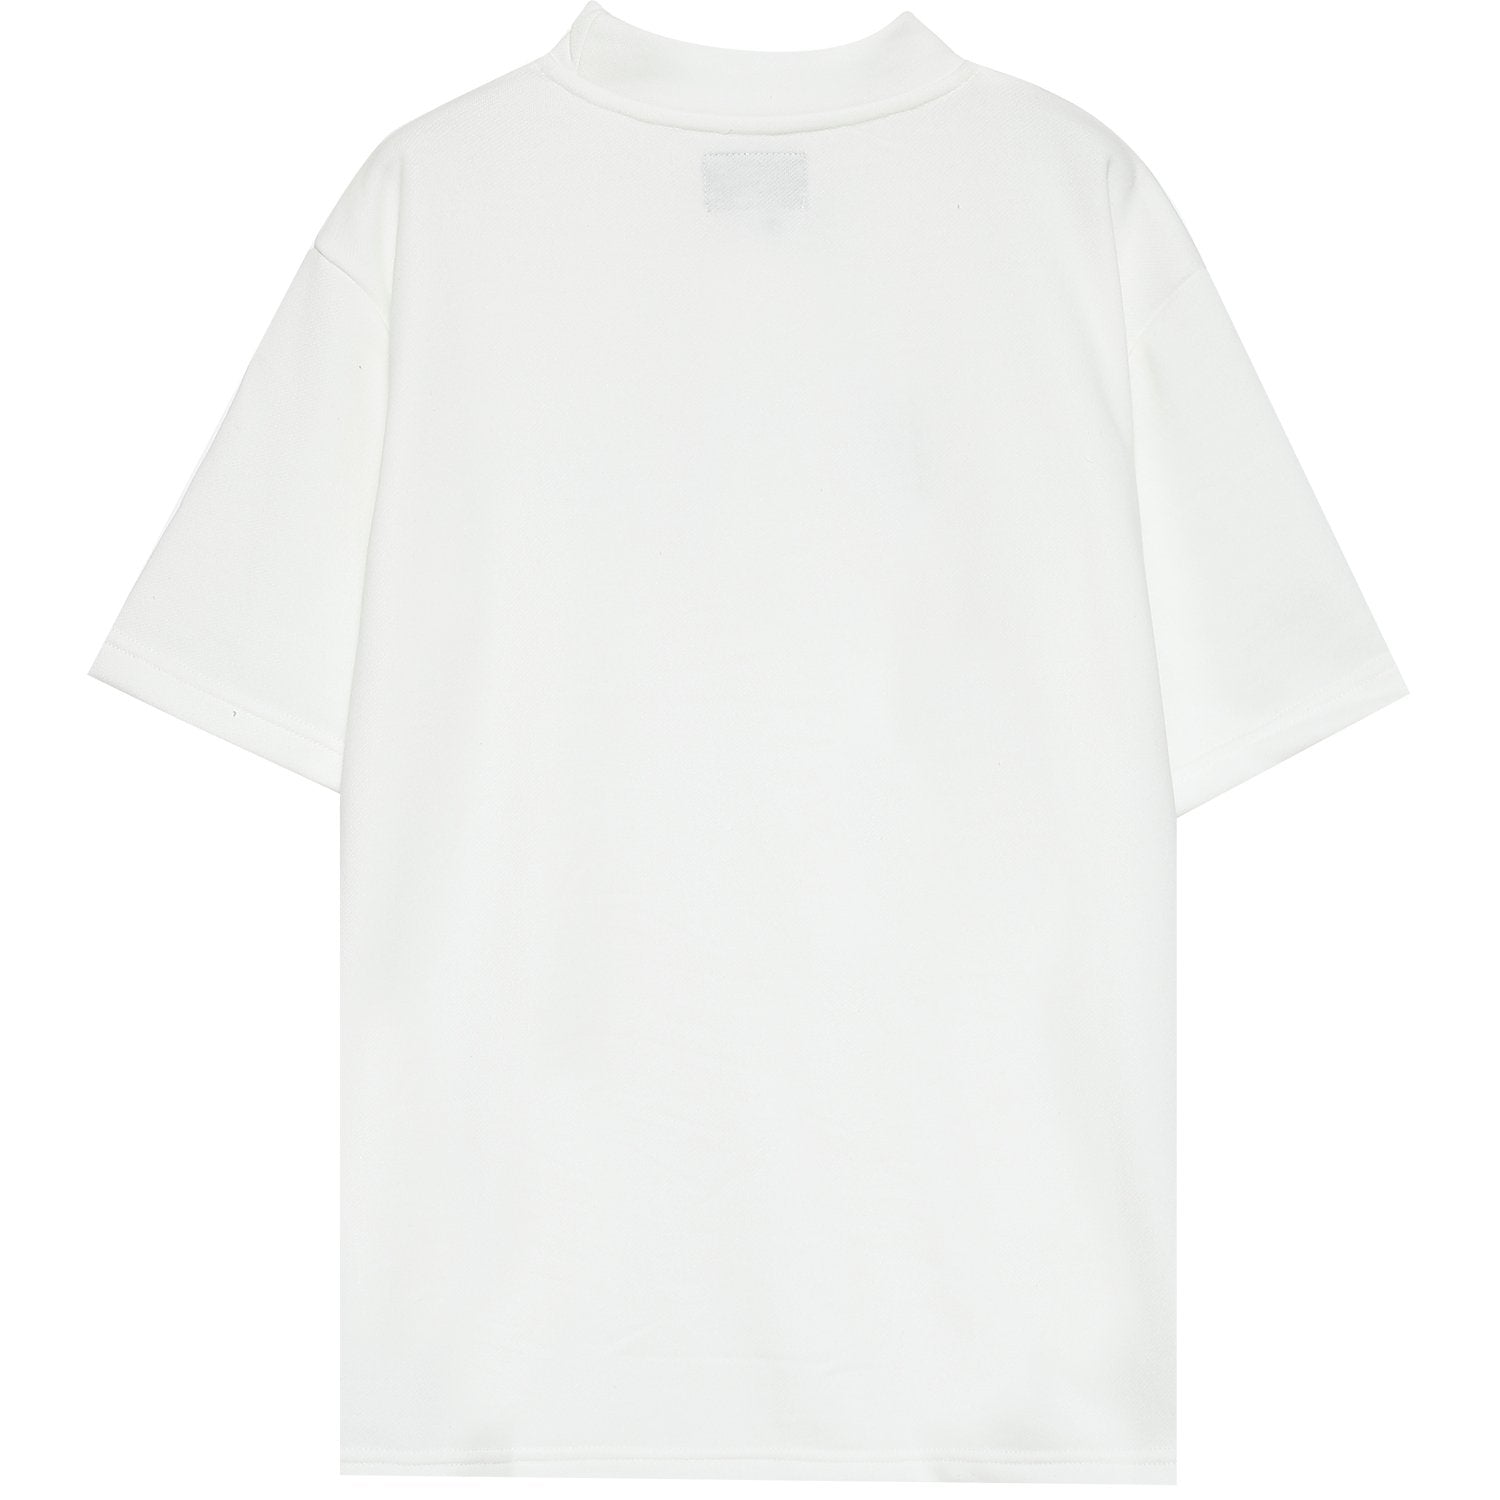 Shorts sleeves logo sweater White